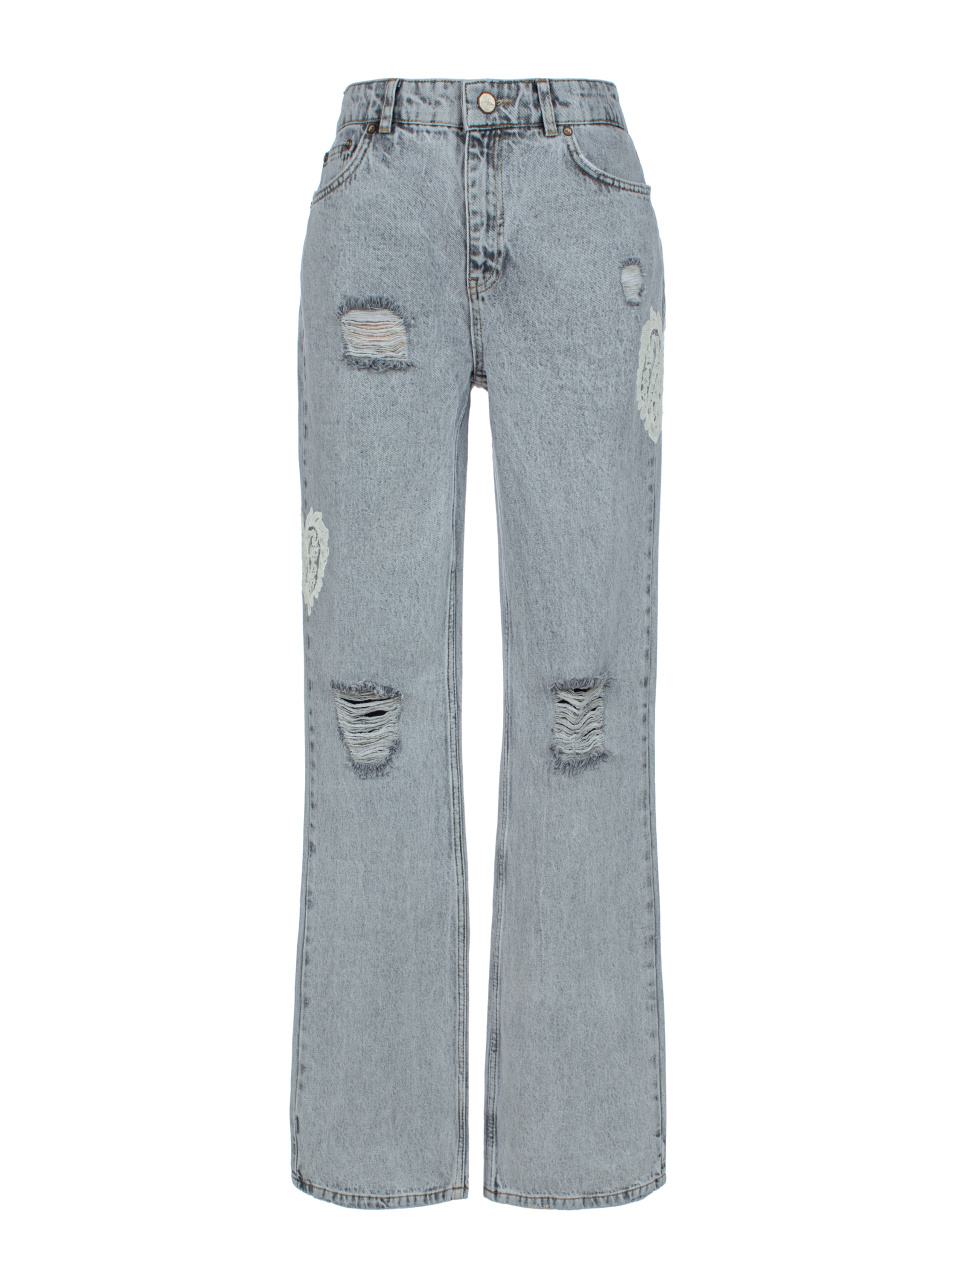 Расклешенные светло-серые джинсы с декором из кружева, 1